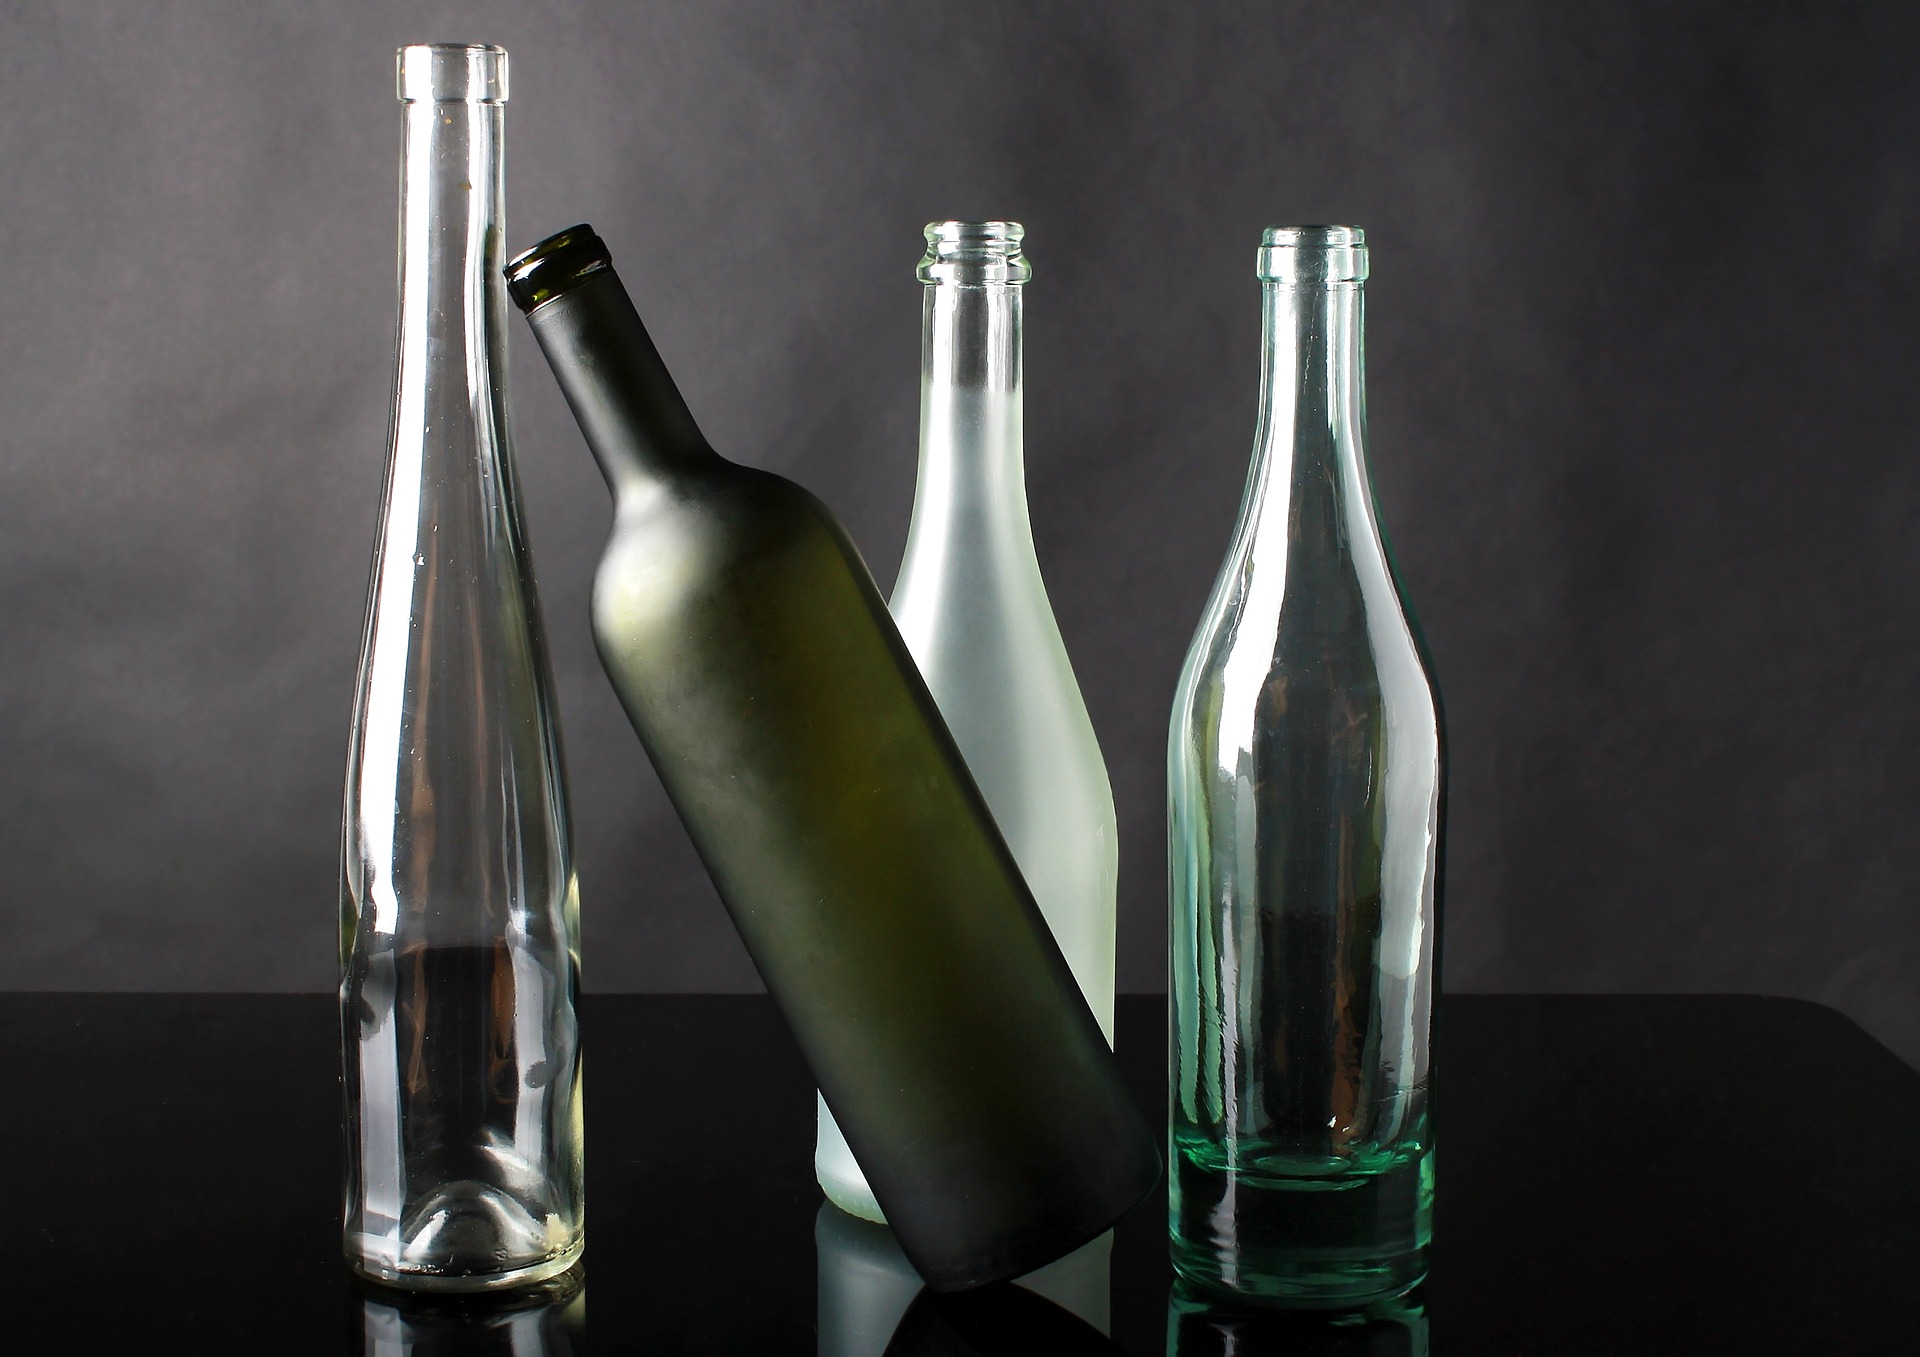 Image of 4 glass bottles